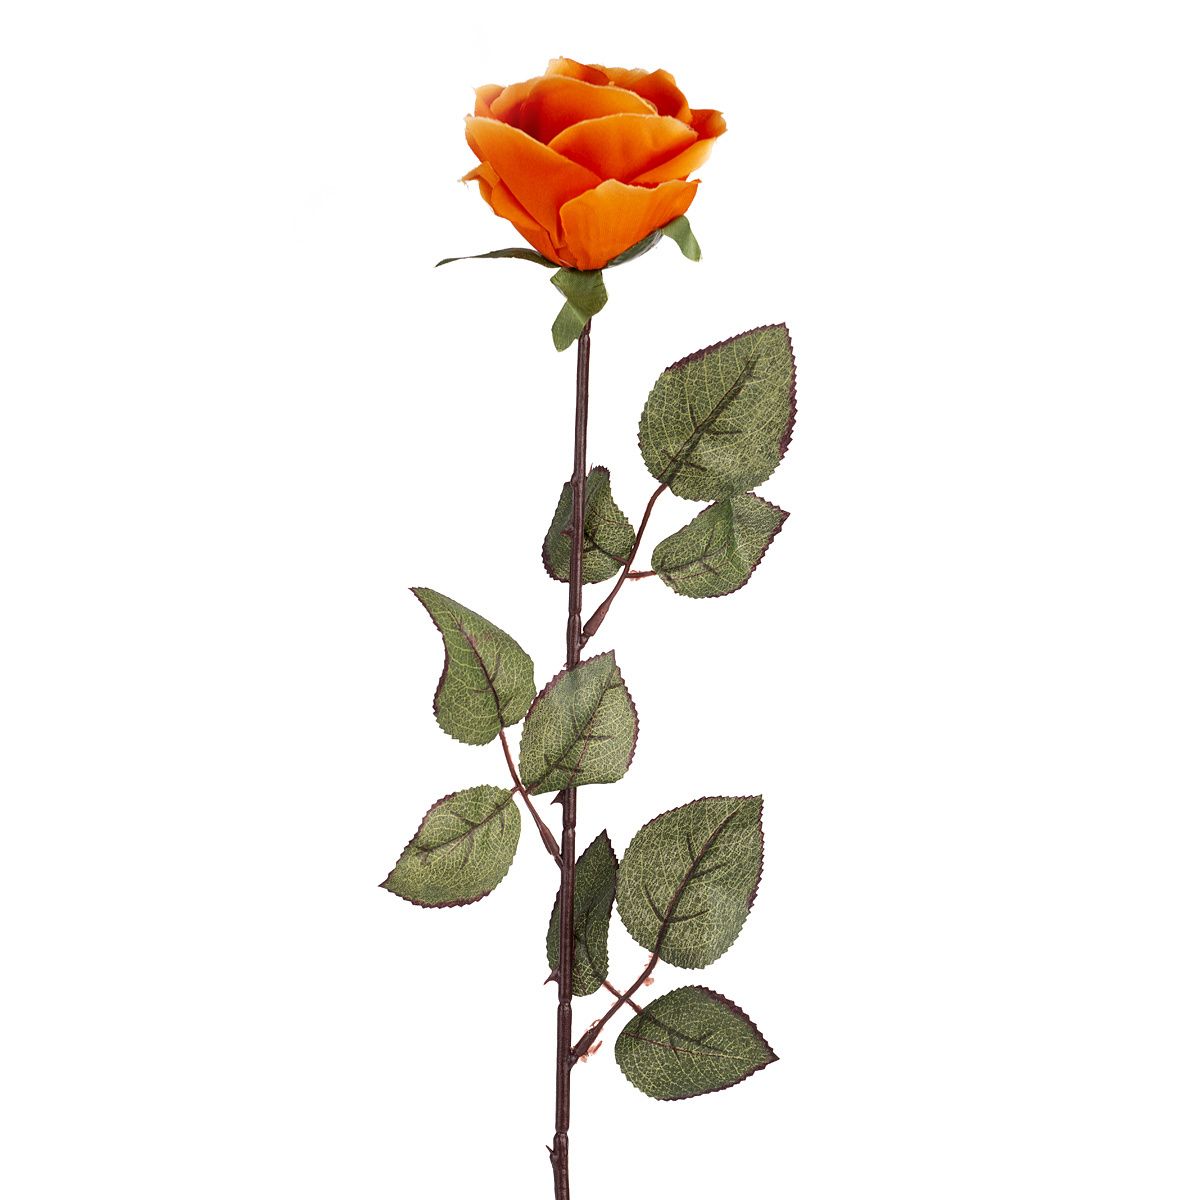 Umělá květina Růže velkokvětá 72 cm, oranžová - 4home.cz